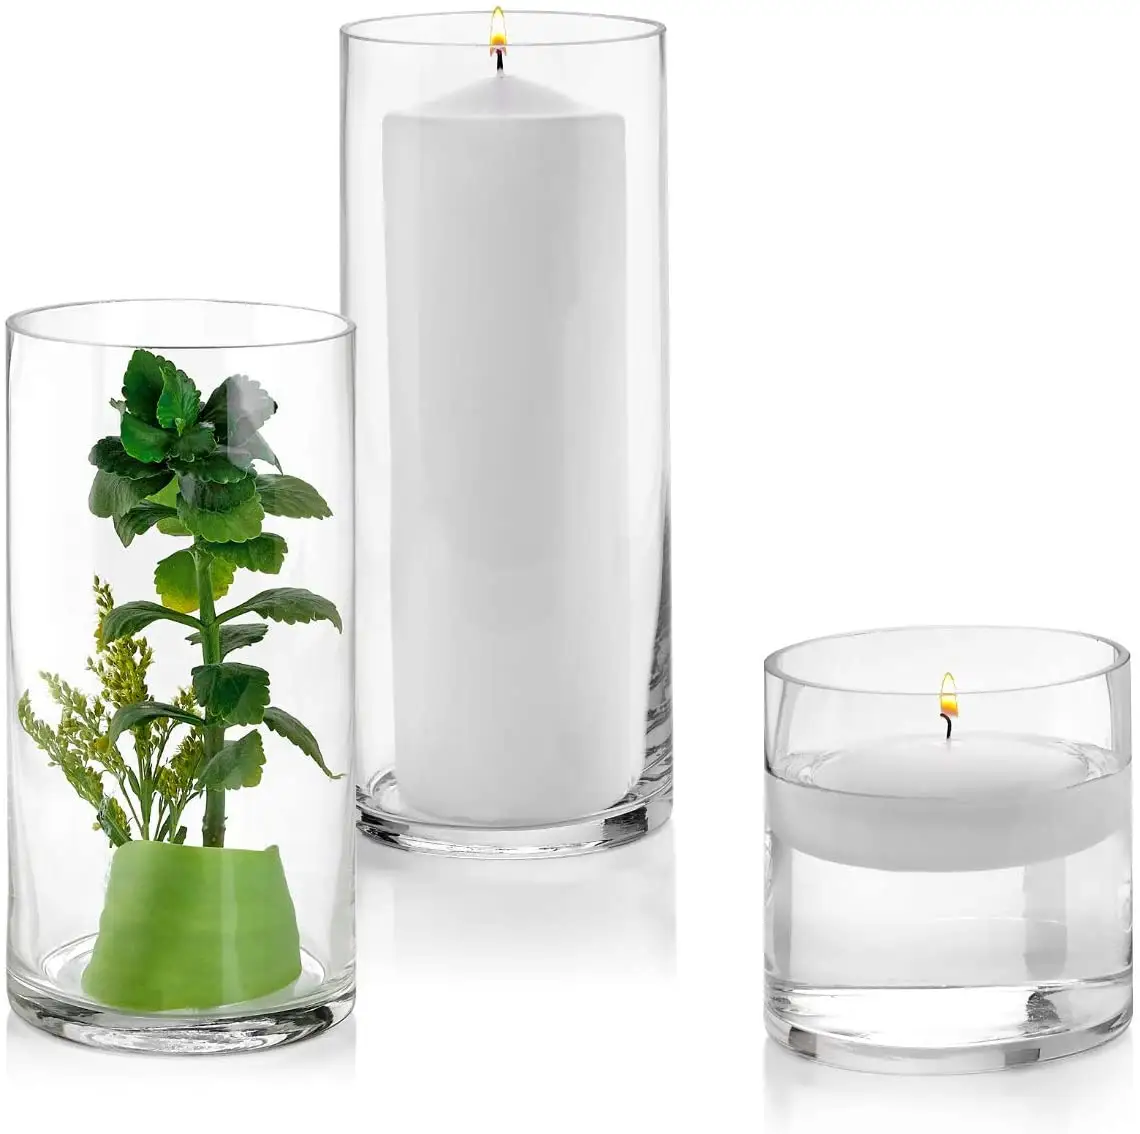 आधुनिक ग्लास सिलेंडर फूलदान होम डेजर्सआईबाम्बू फूलदान फ्लोटिंग मोमबत्ती धारक ग्लास आधुनिक पैकिंग के लिए पारदर्शी और प्लास्टिक